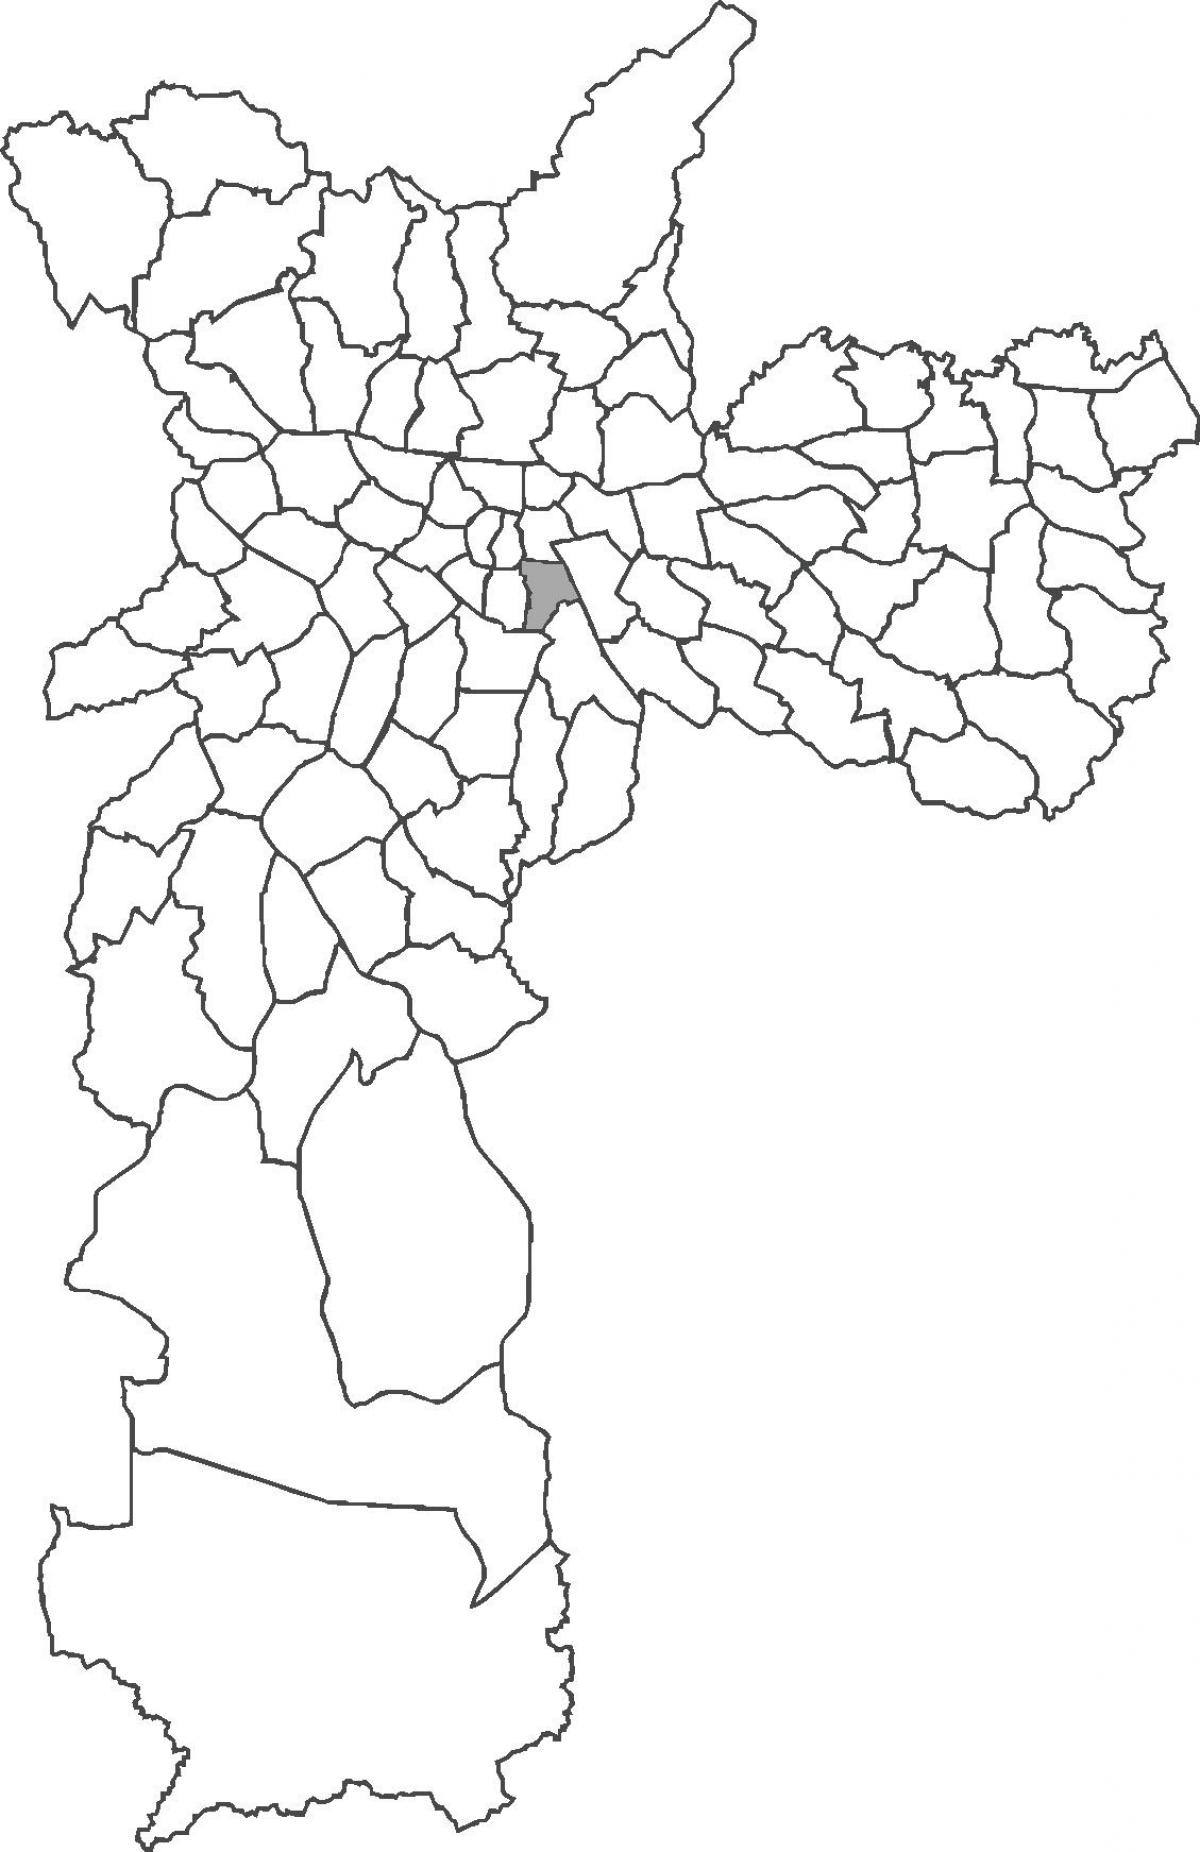 মানচিত্র Cambuci জেলা